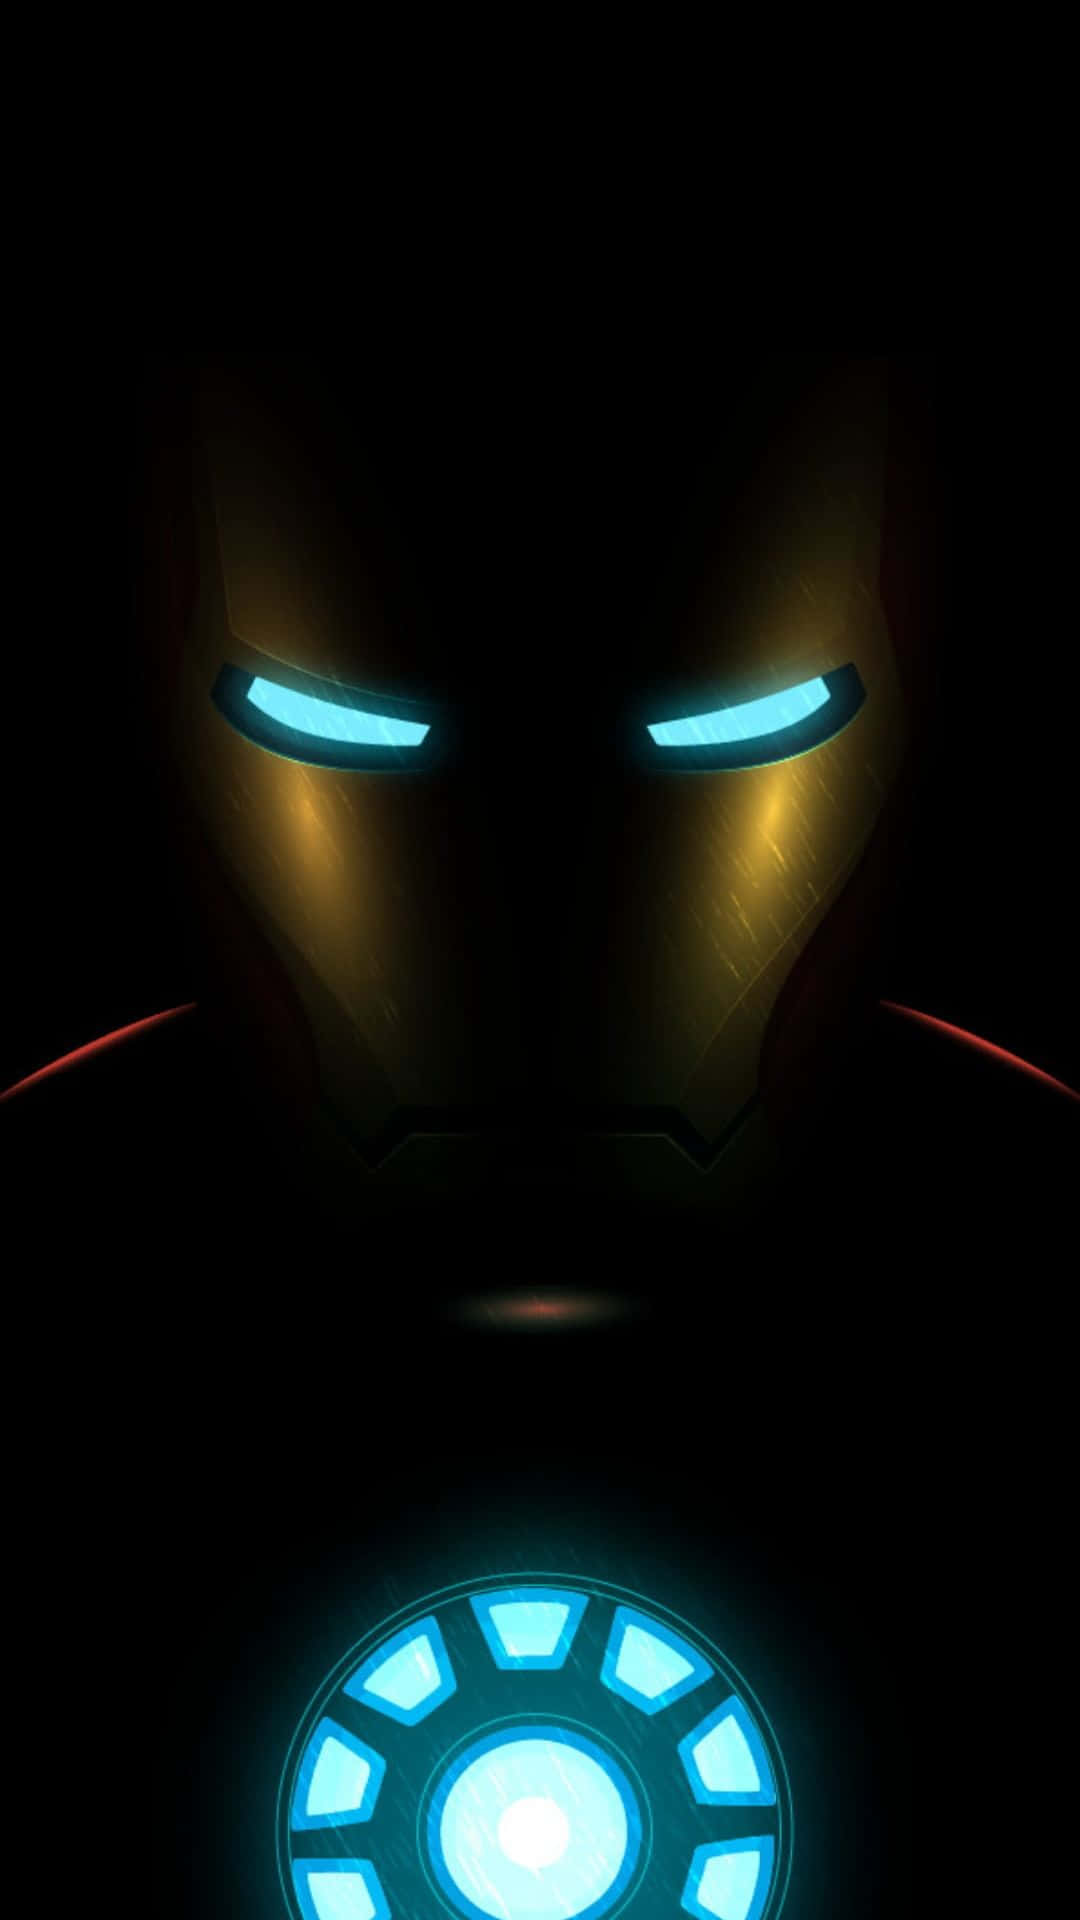 Androidede Iron Man En Una Pose De Superhéroe.